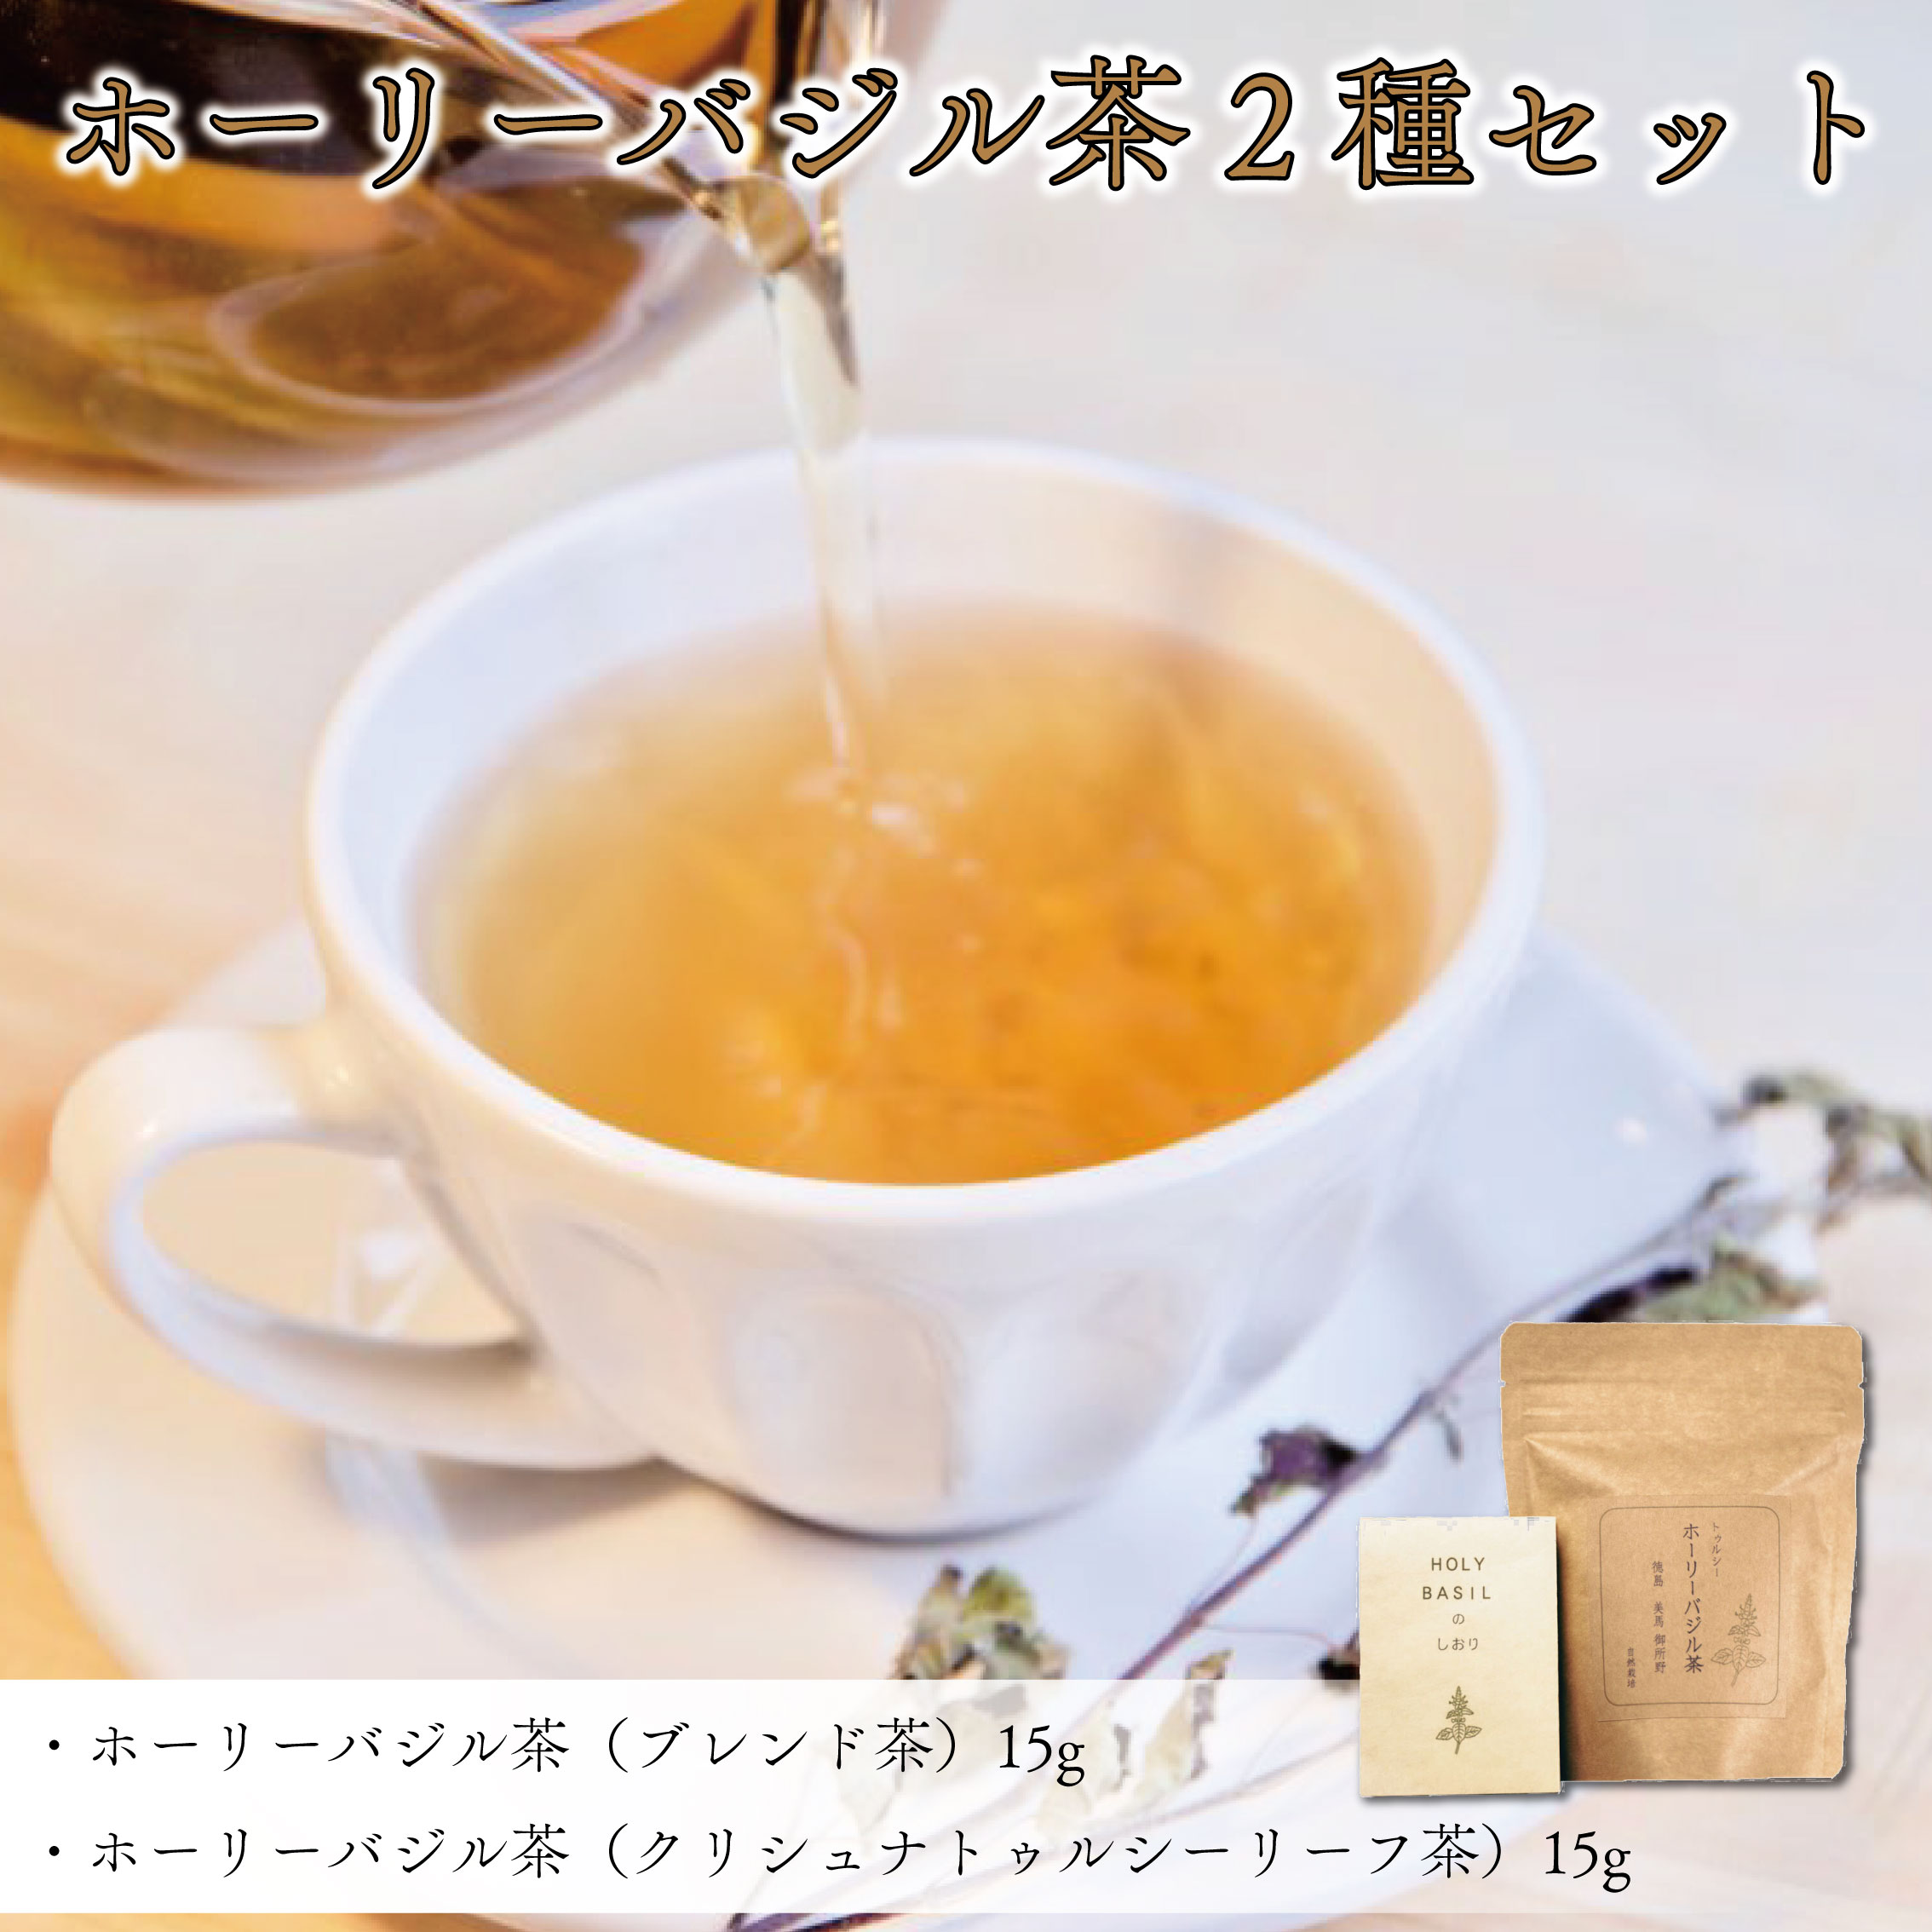 【ふるさと納税】 お茶 ブレンド茶 バジル茶 2種 セット ホーリーバジル茶 ハーブティ 徳島県 阿波市 ハナサカーラ